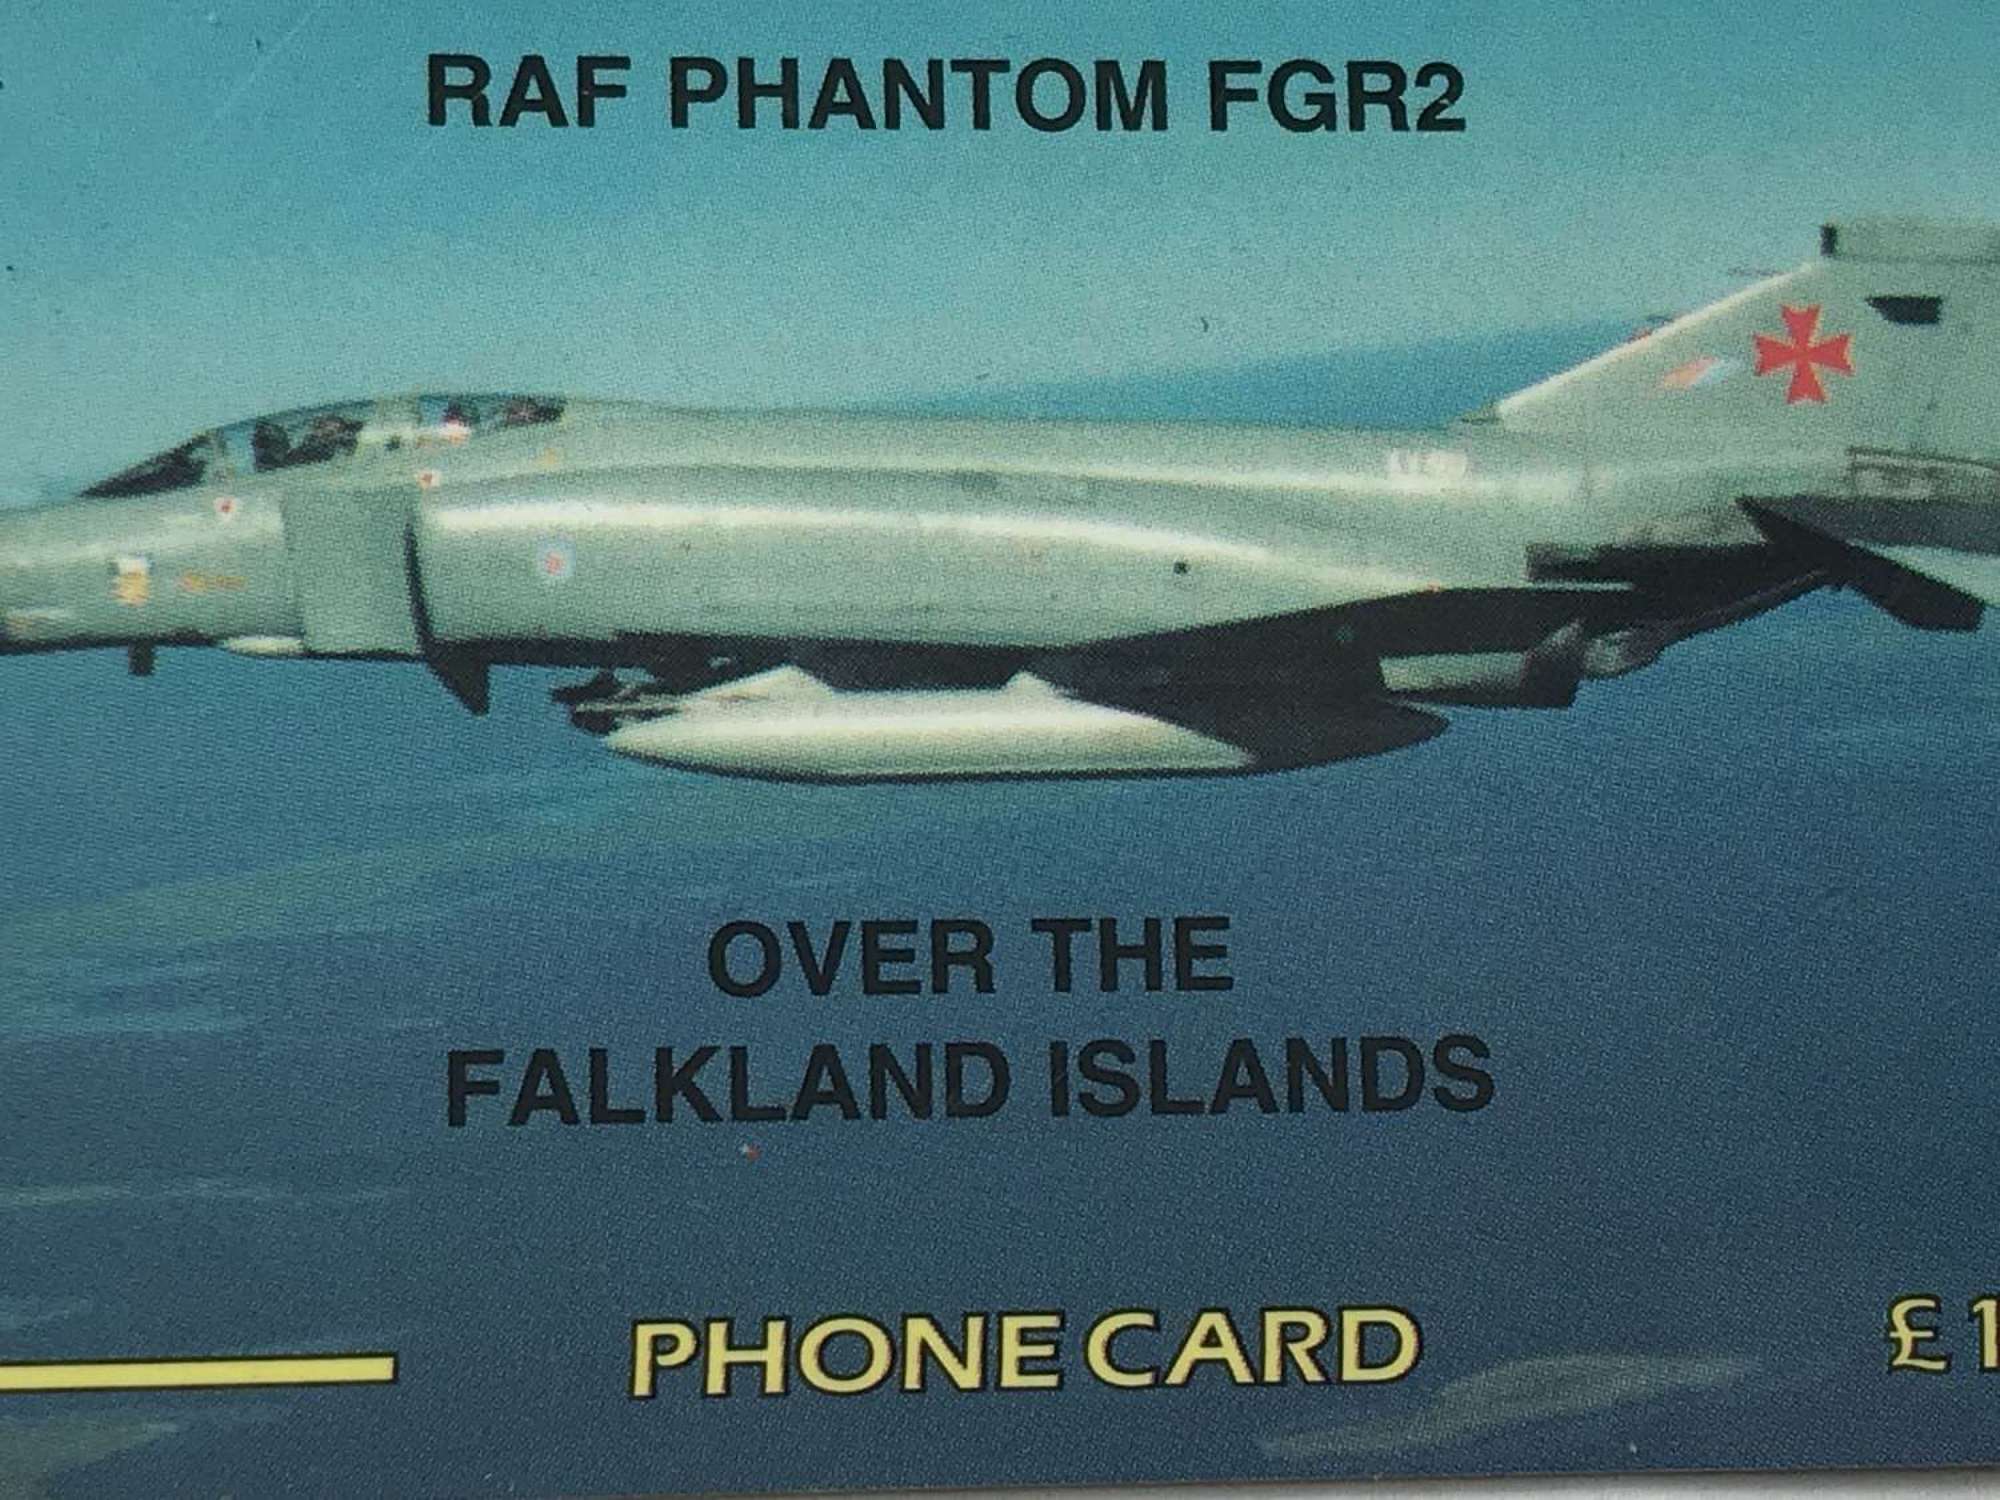 Rare Falklands Phone card featuring RAF Phantom